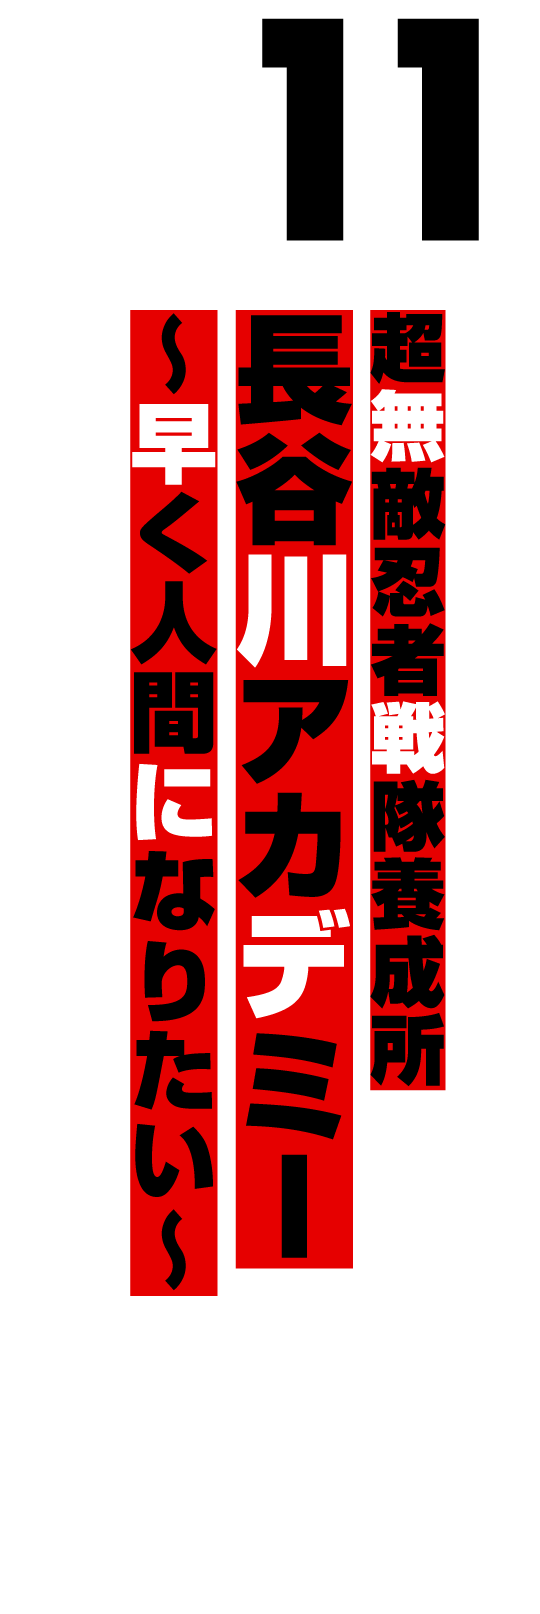 超無敵忍者戦隊養成所 長谷川アカデミー 〜早く人間になりたい〜（1998.12）